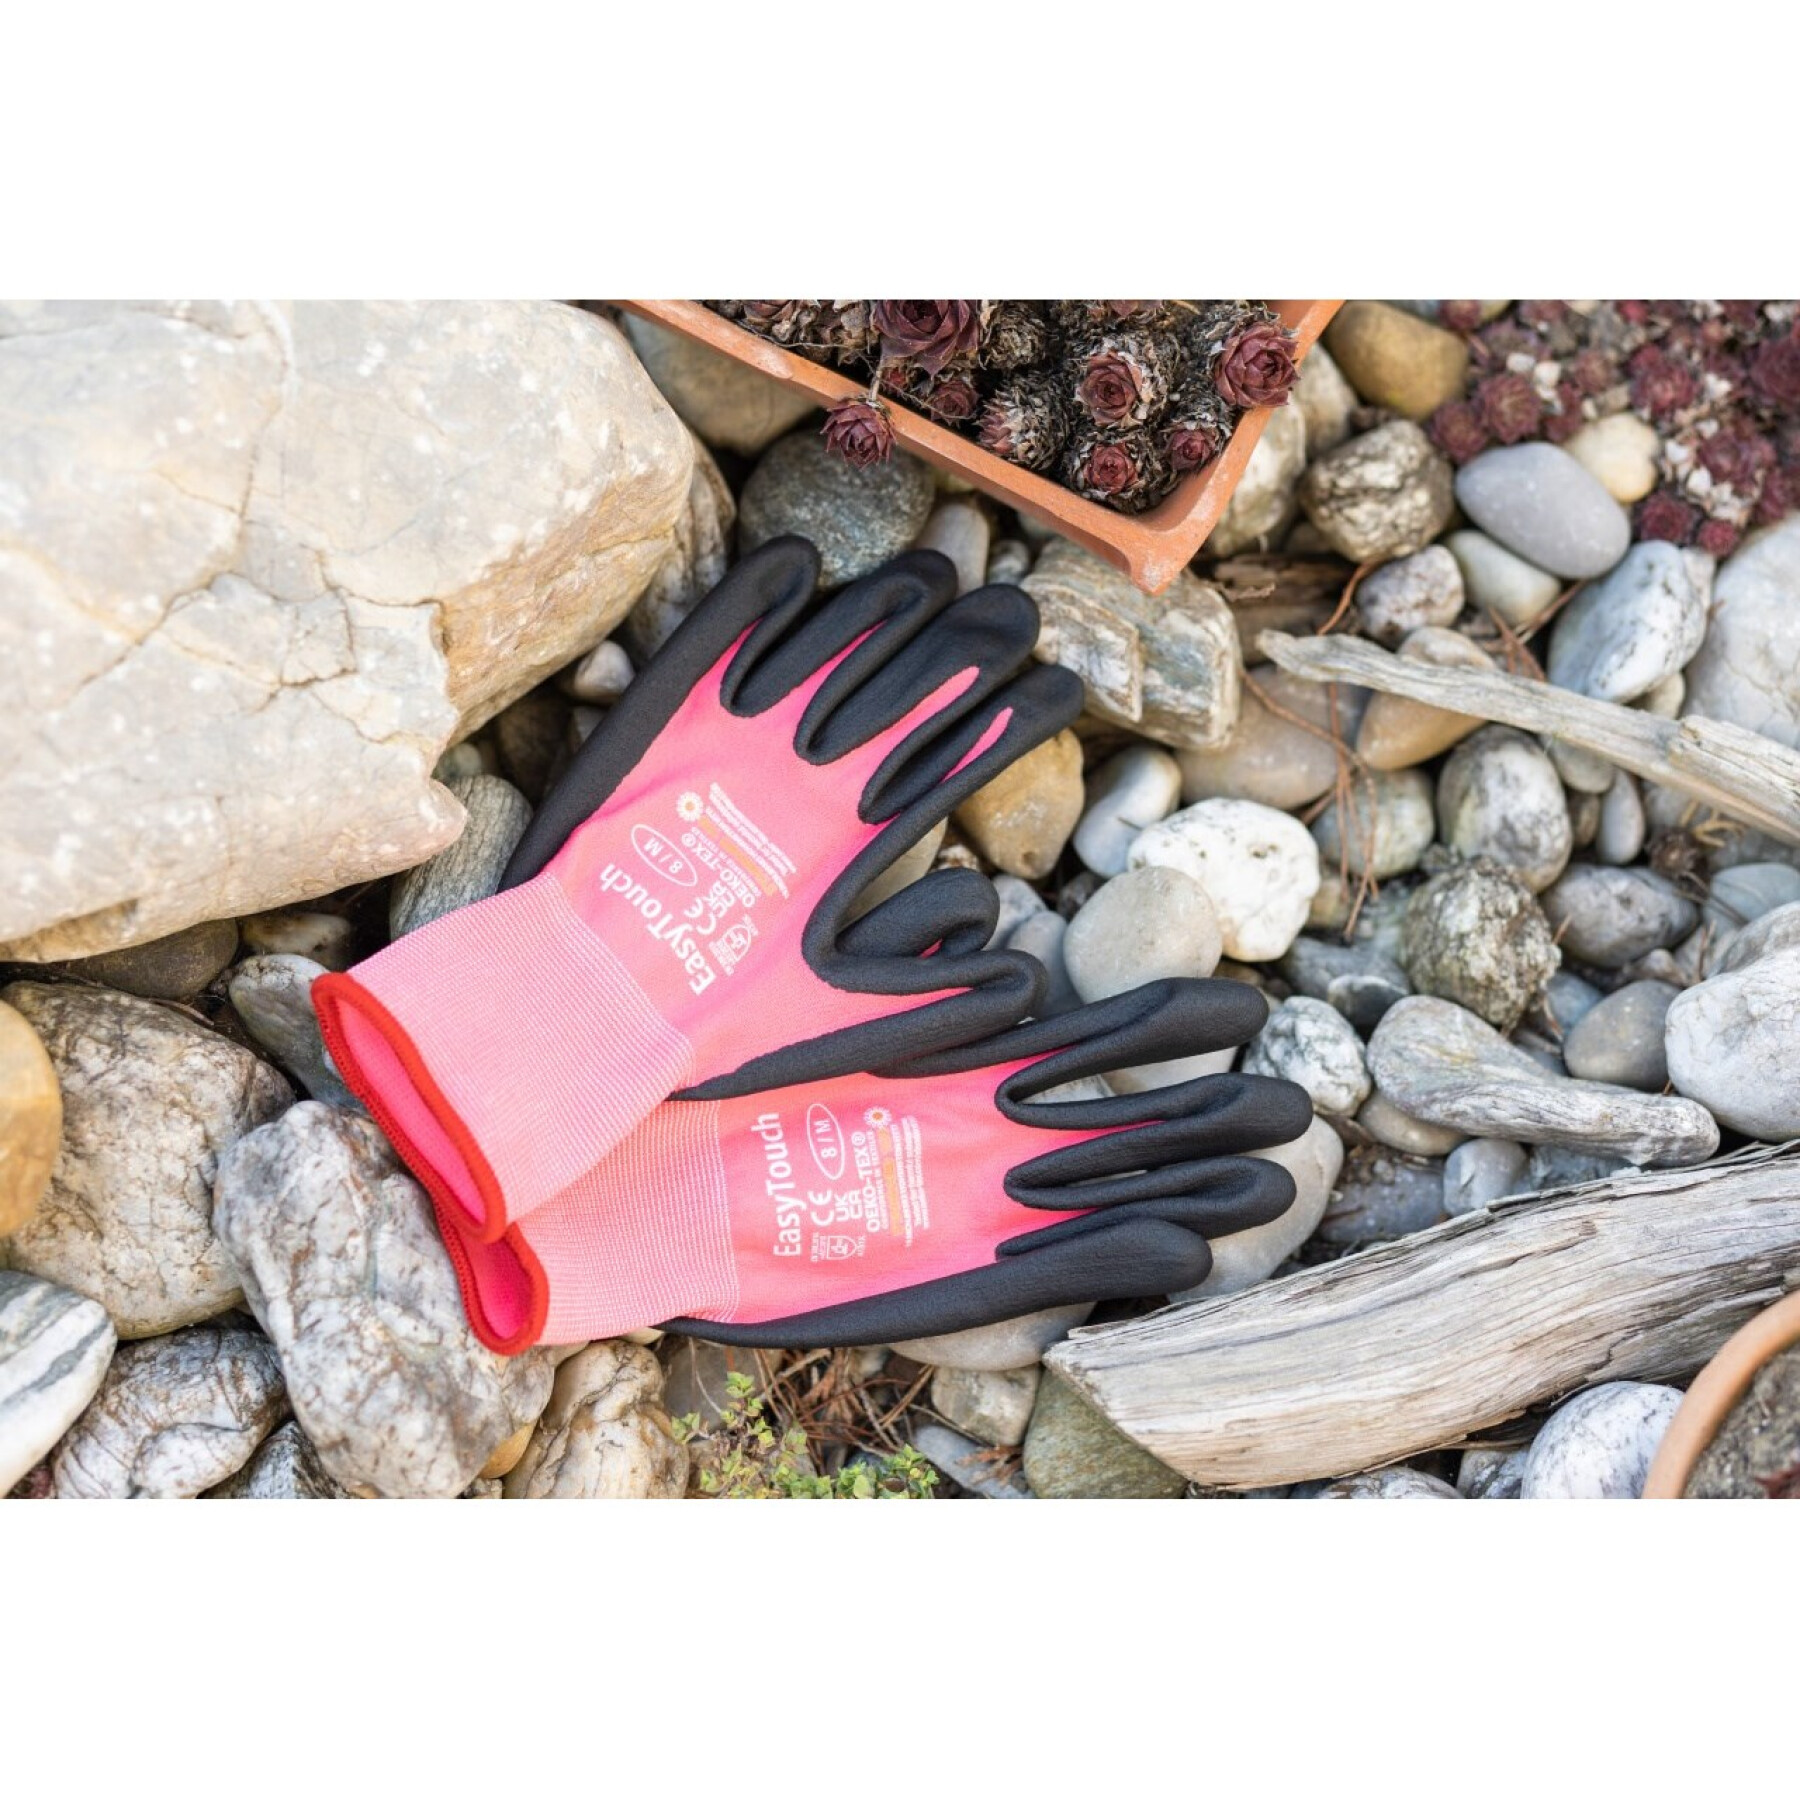 Gardening gloves Kerbl EasyTouch